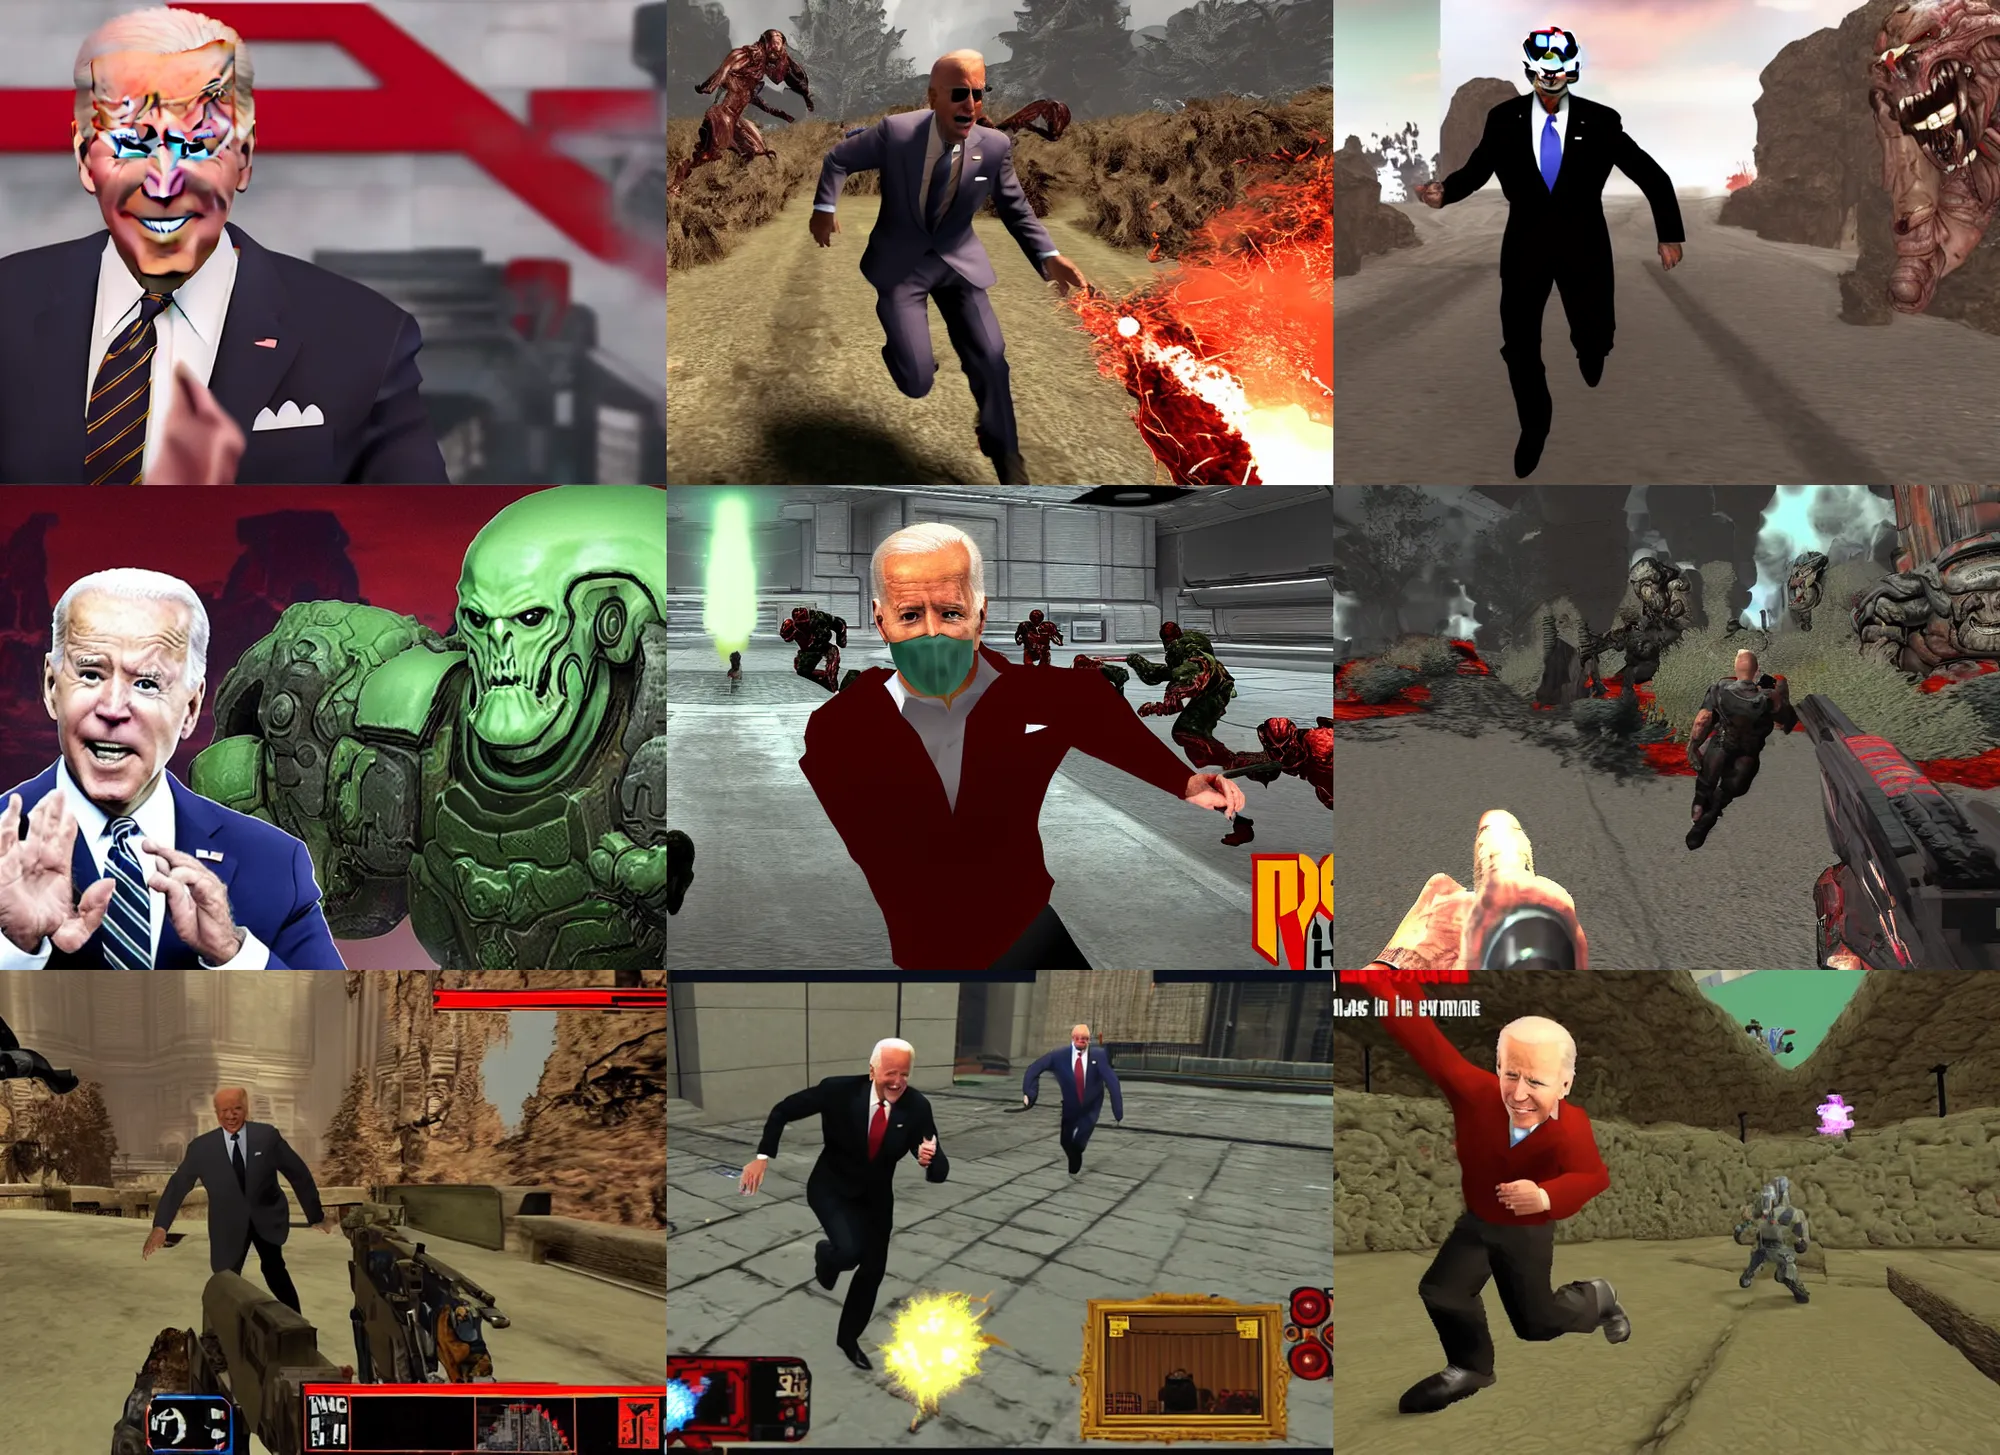 Prompt: Joe Biden in a screenshot of the video game doom, Joe Biden is running away